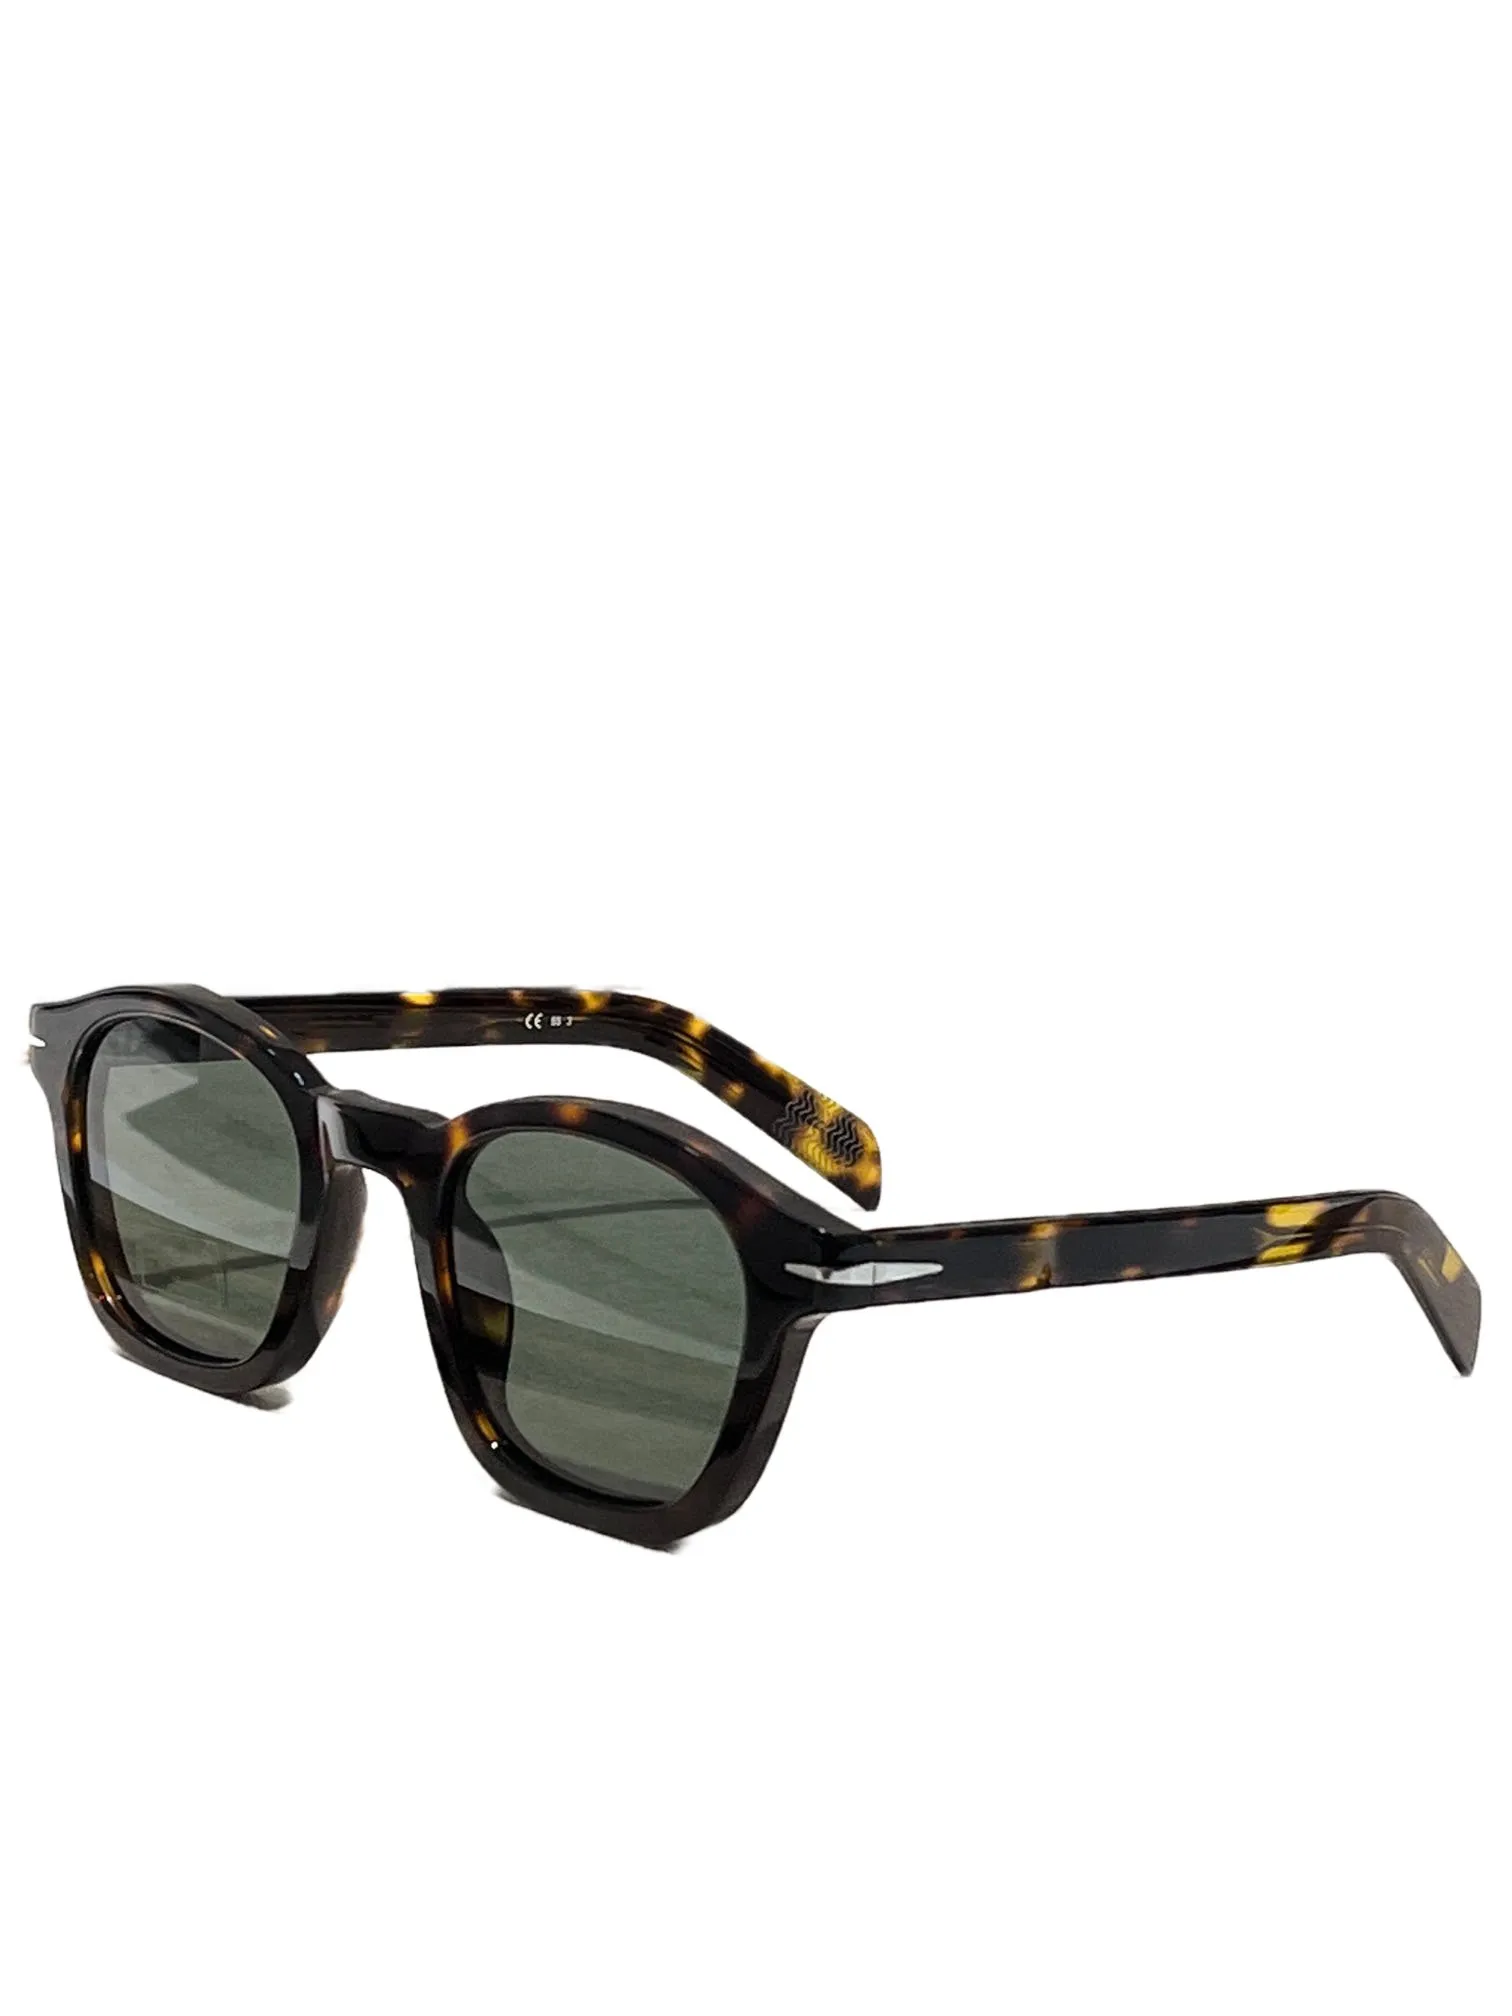 Óculos de sol feminino para homens e mulheres, óculos de sol masculino, estilo fashion, protege os olhos, lente uv400 com caixa aleatória e estojo 7046